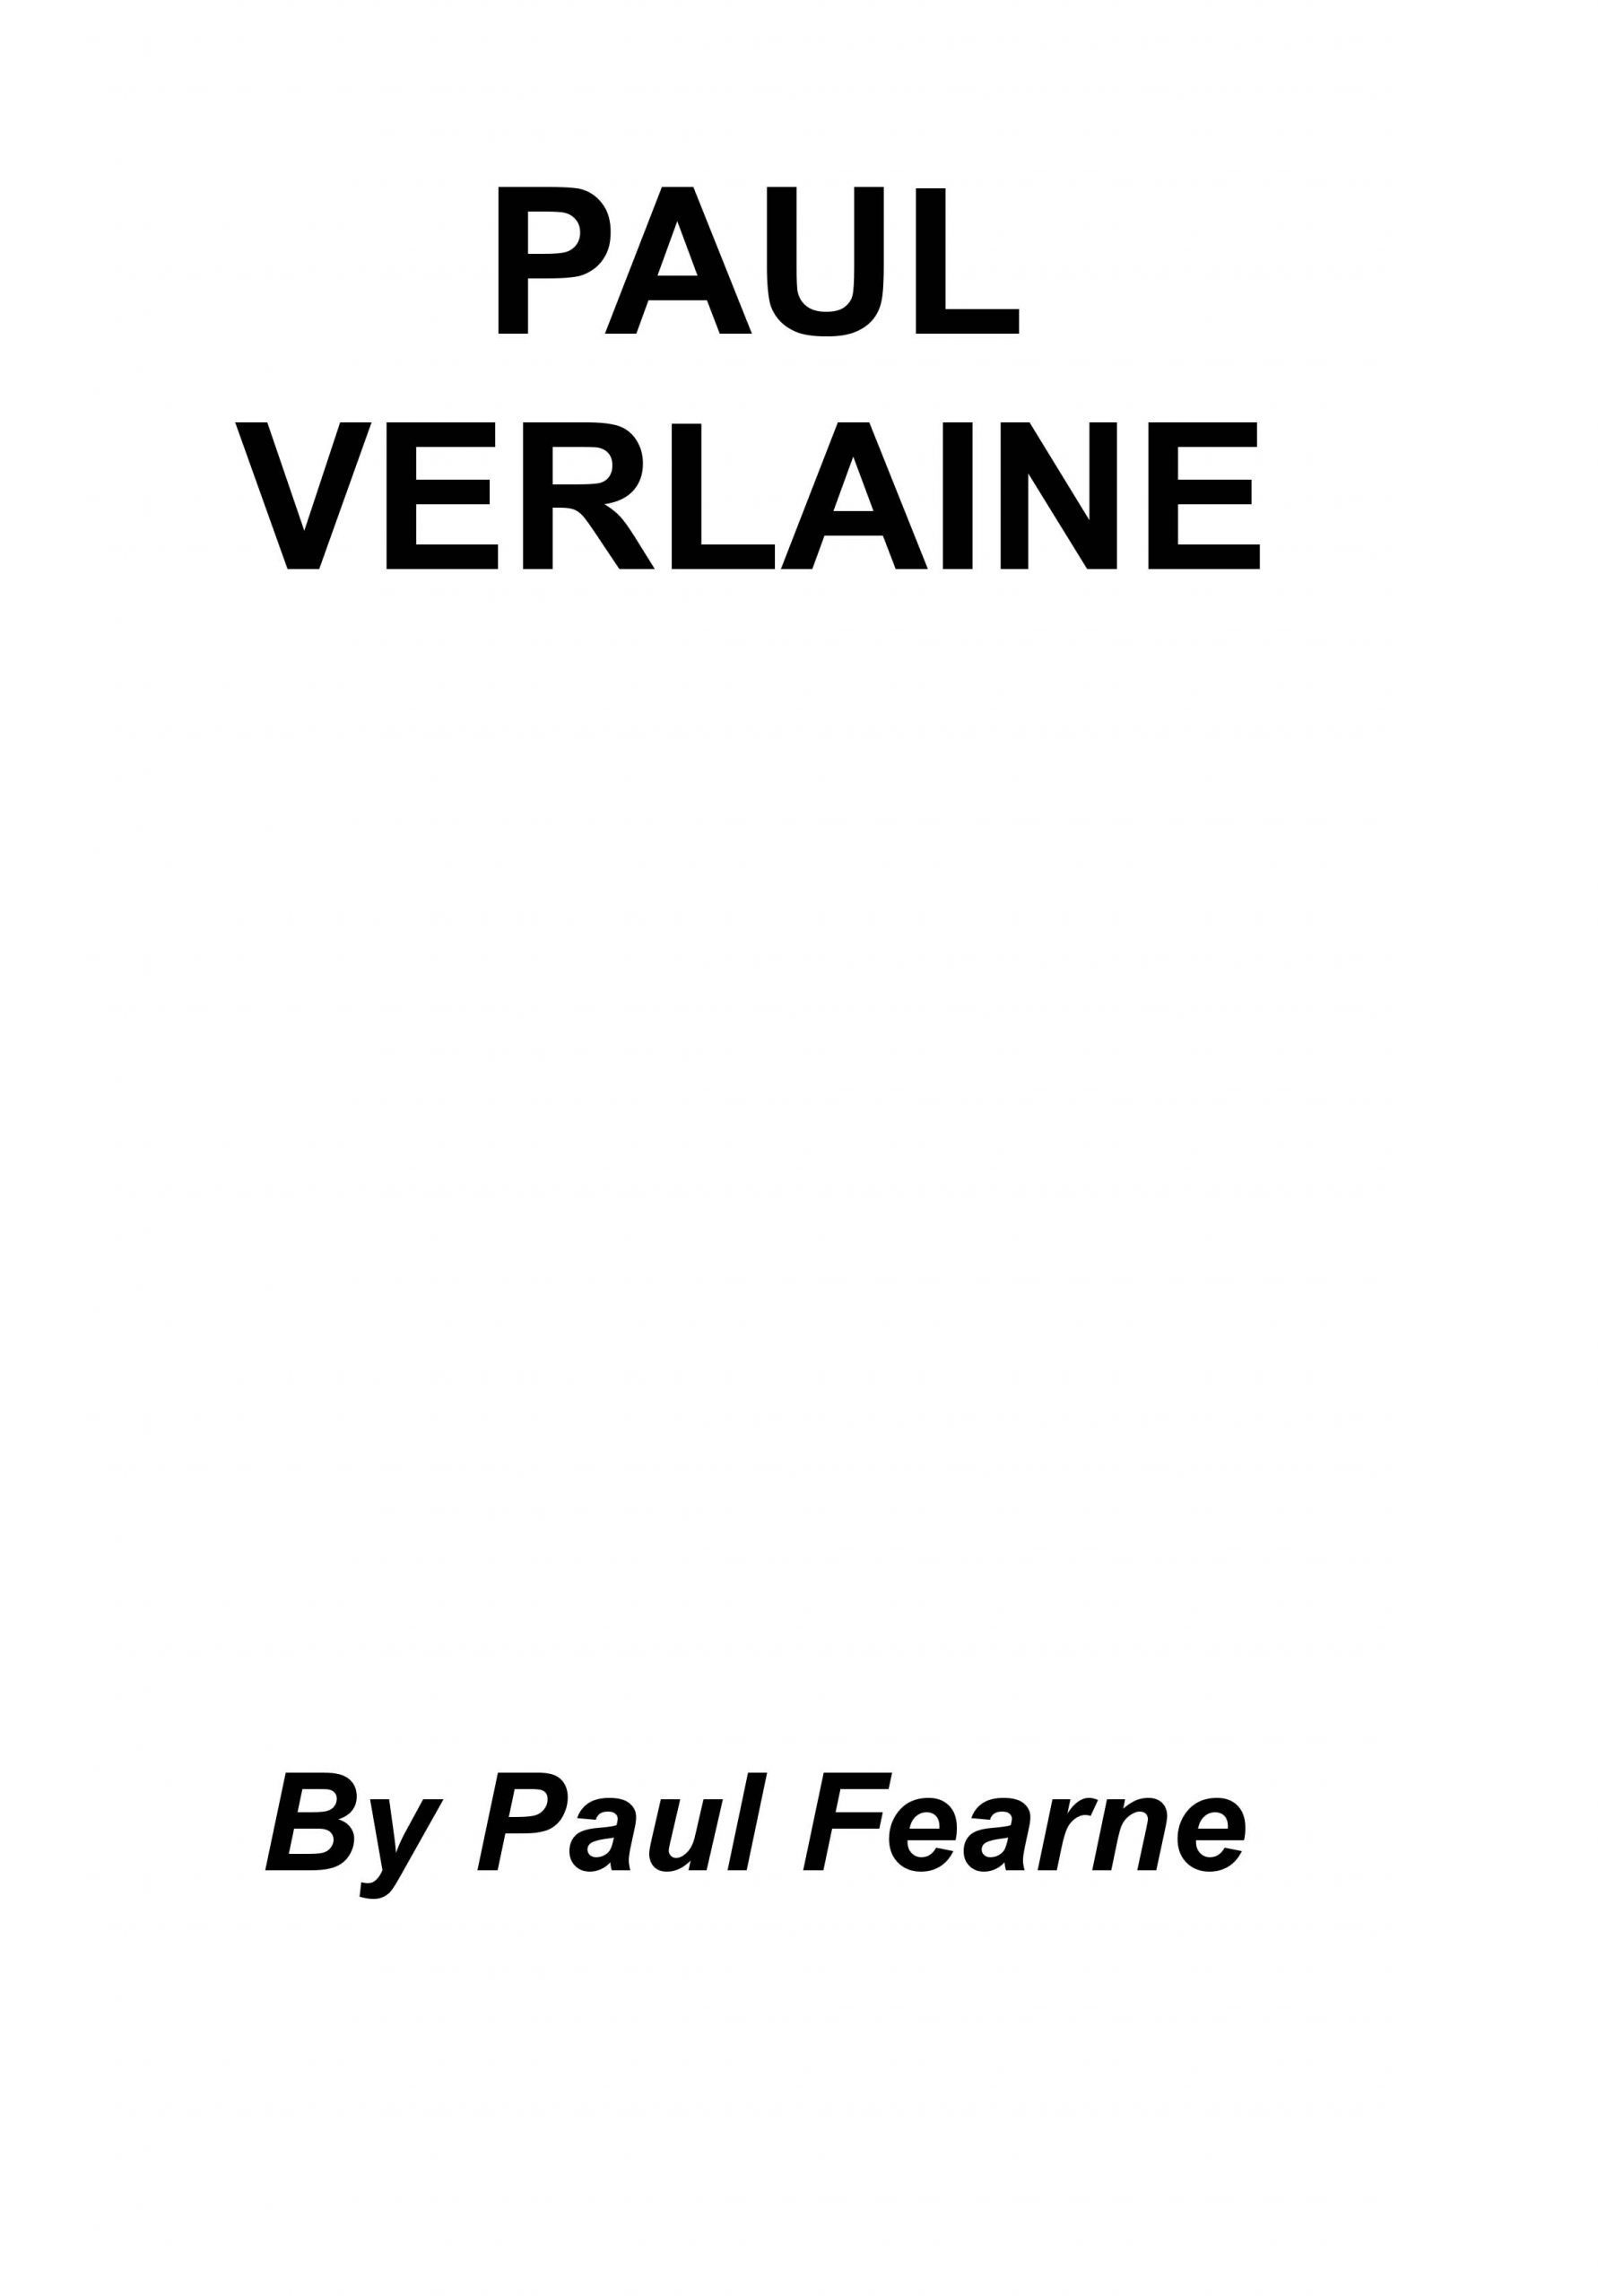 PAUL VERLAINE